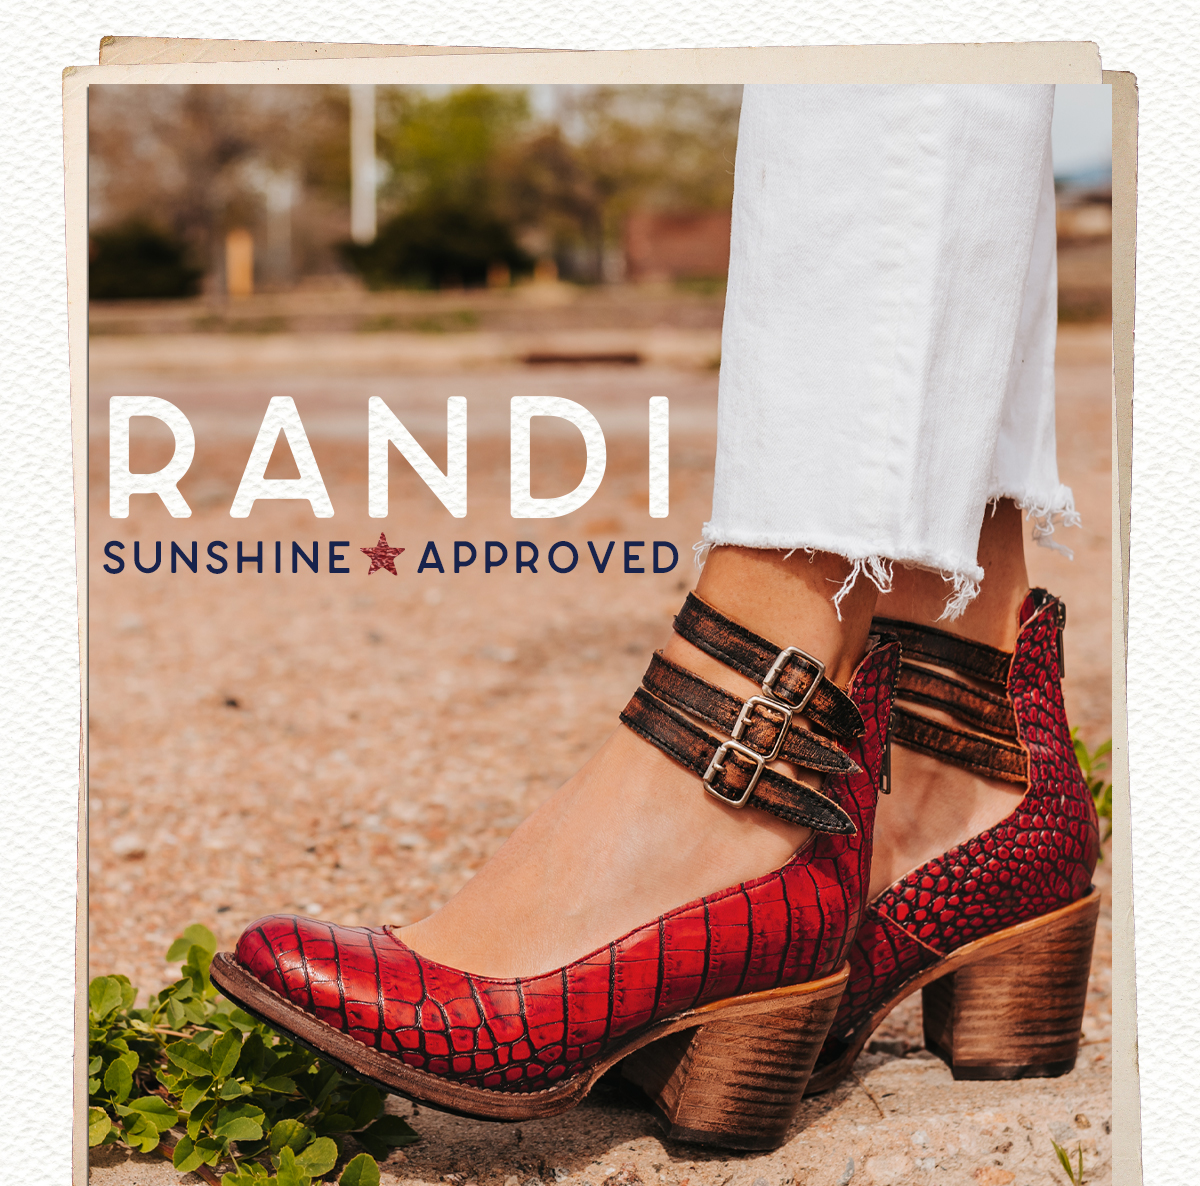 Randi - Sunshine Approved